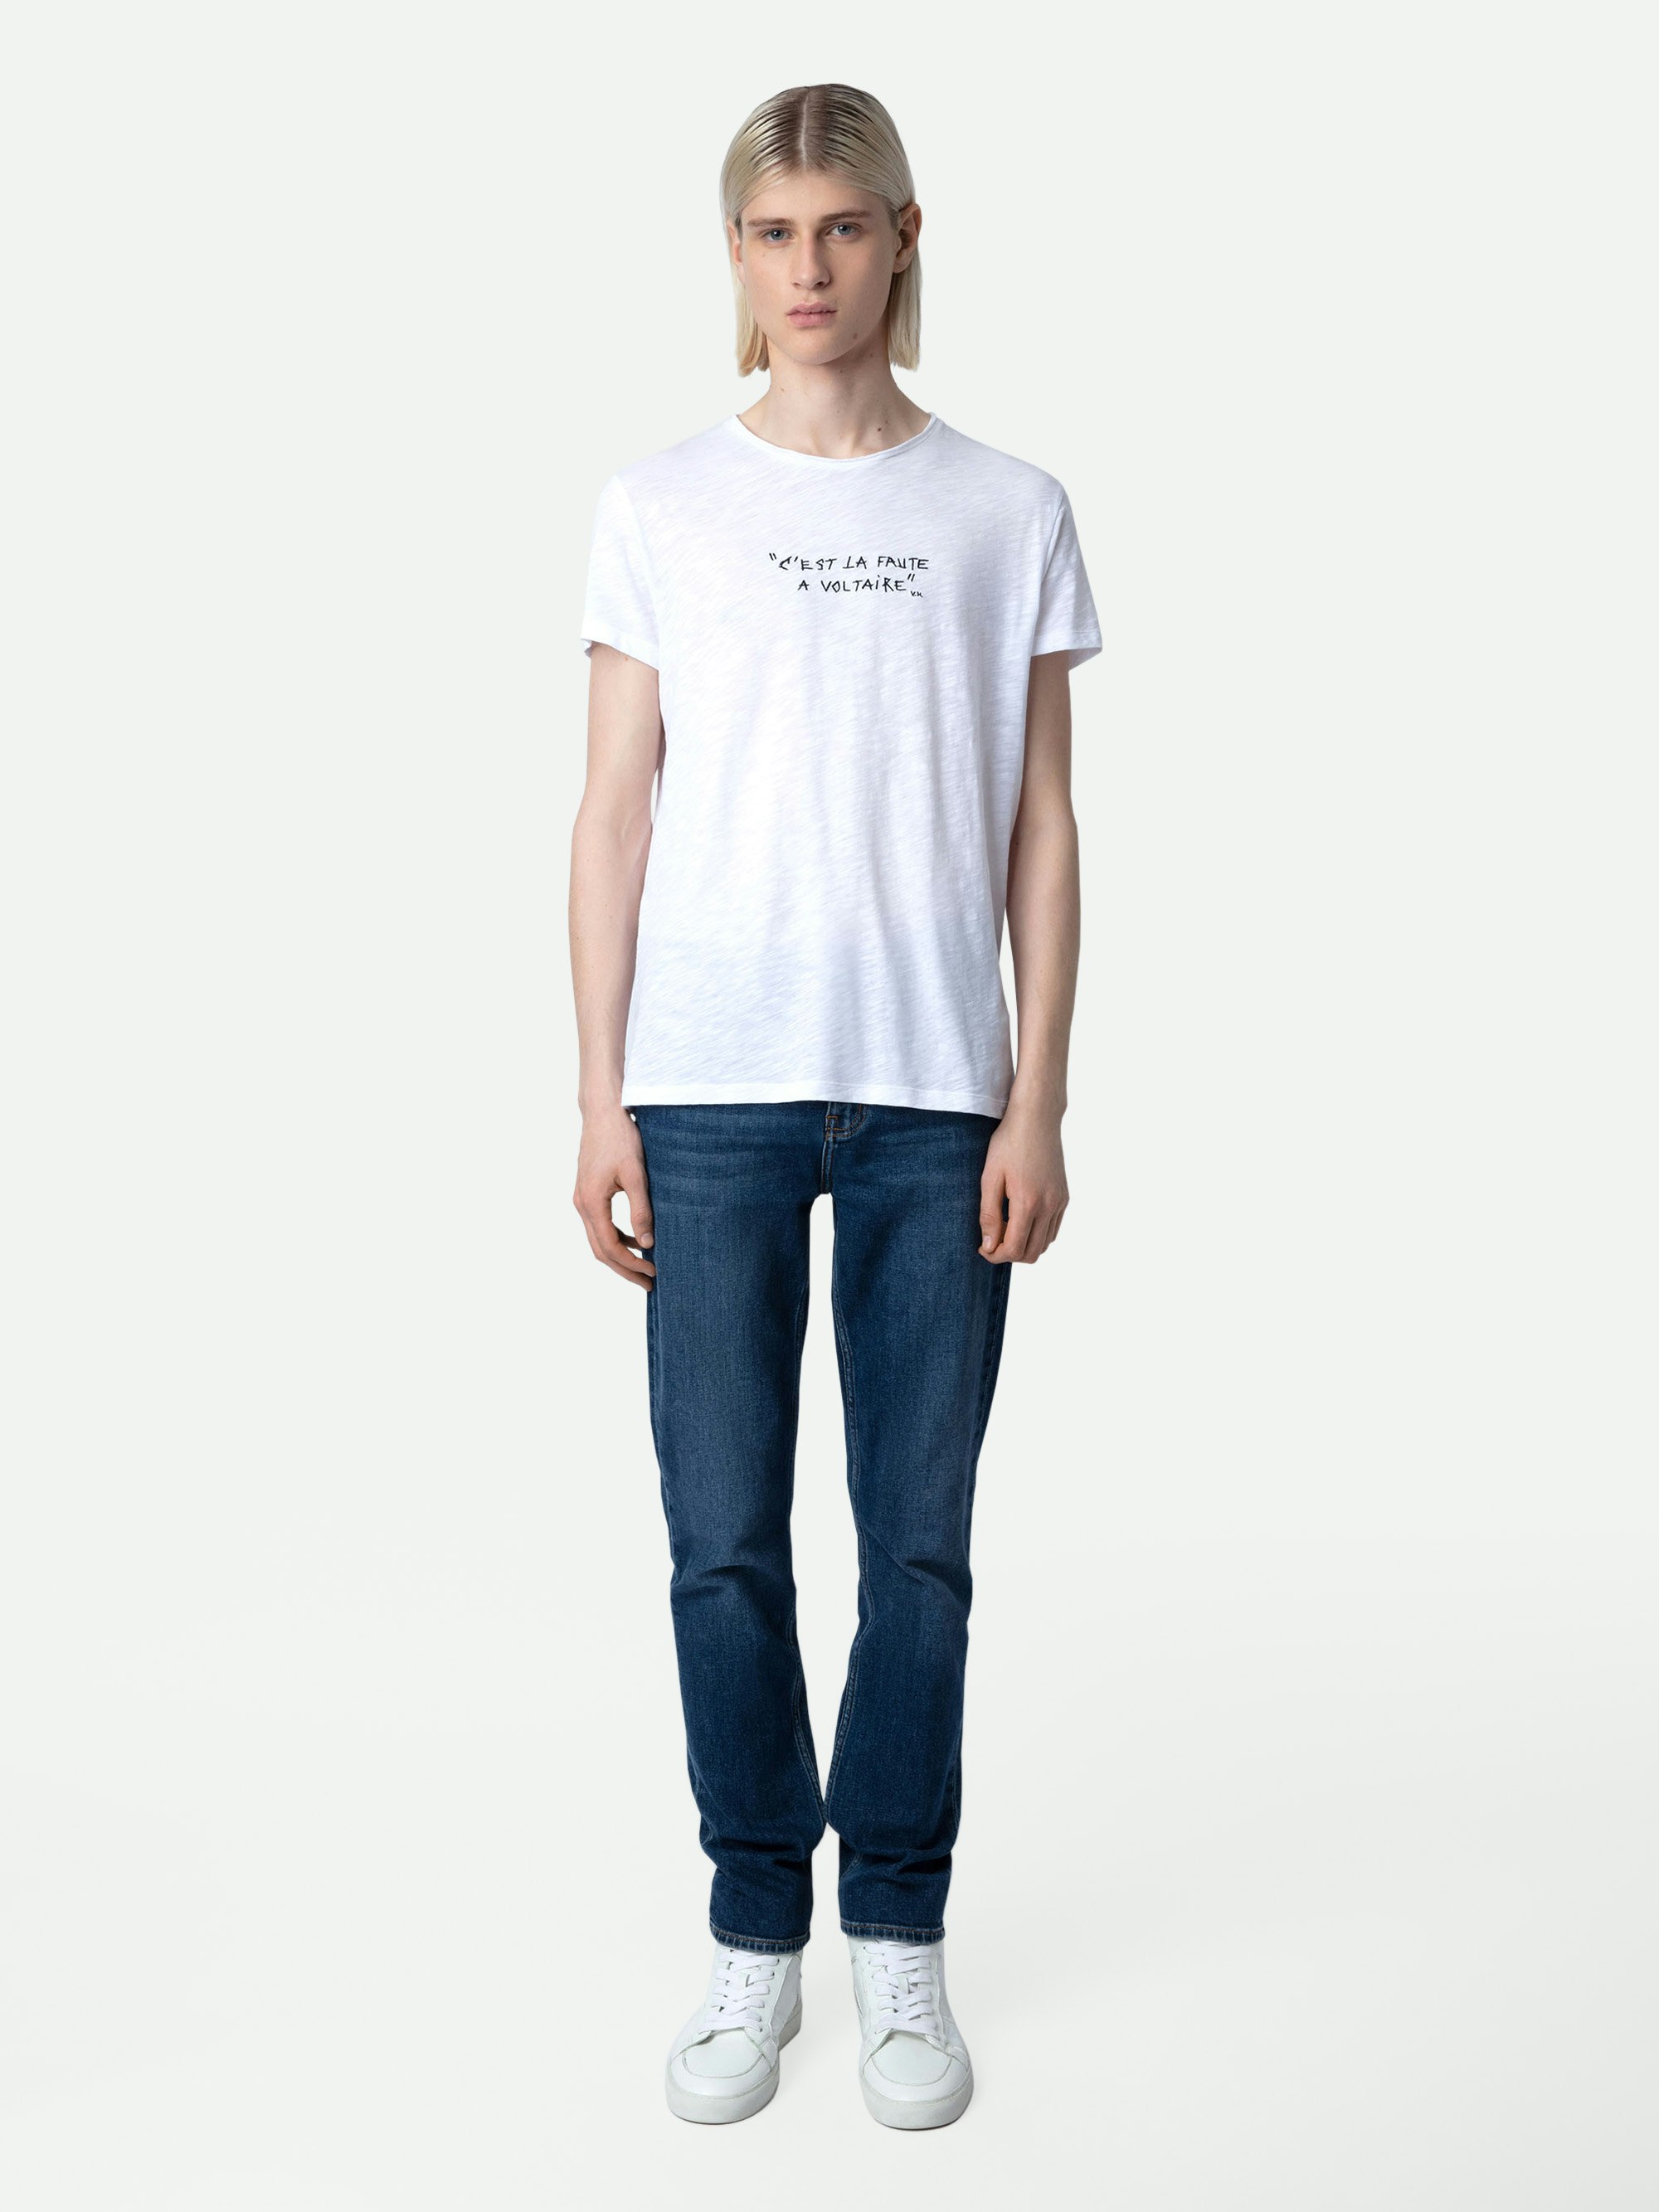 T-shirt Toby Flamme - T-shirt en coton flammé blanc orné du message "C'est la faute à Voltaire".